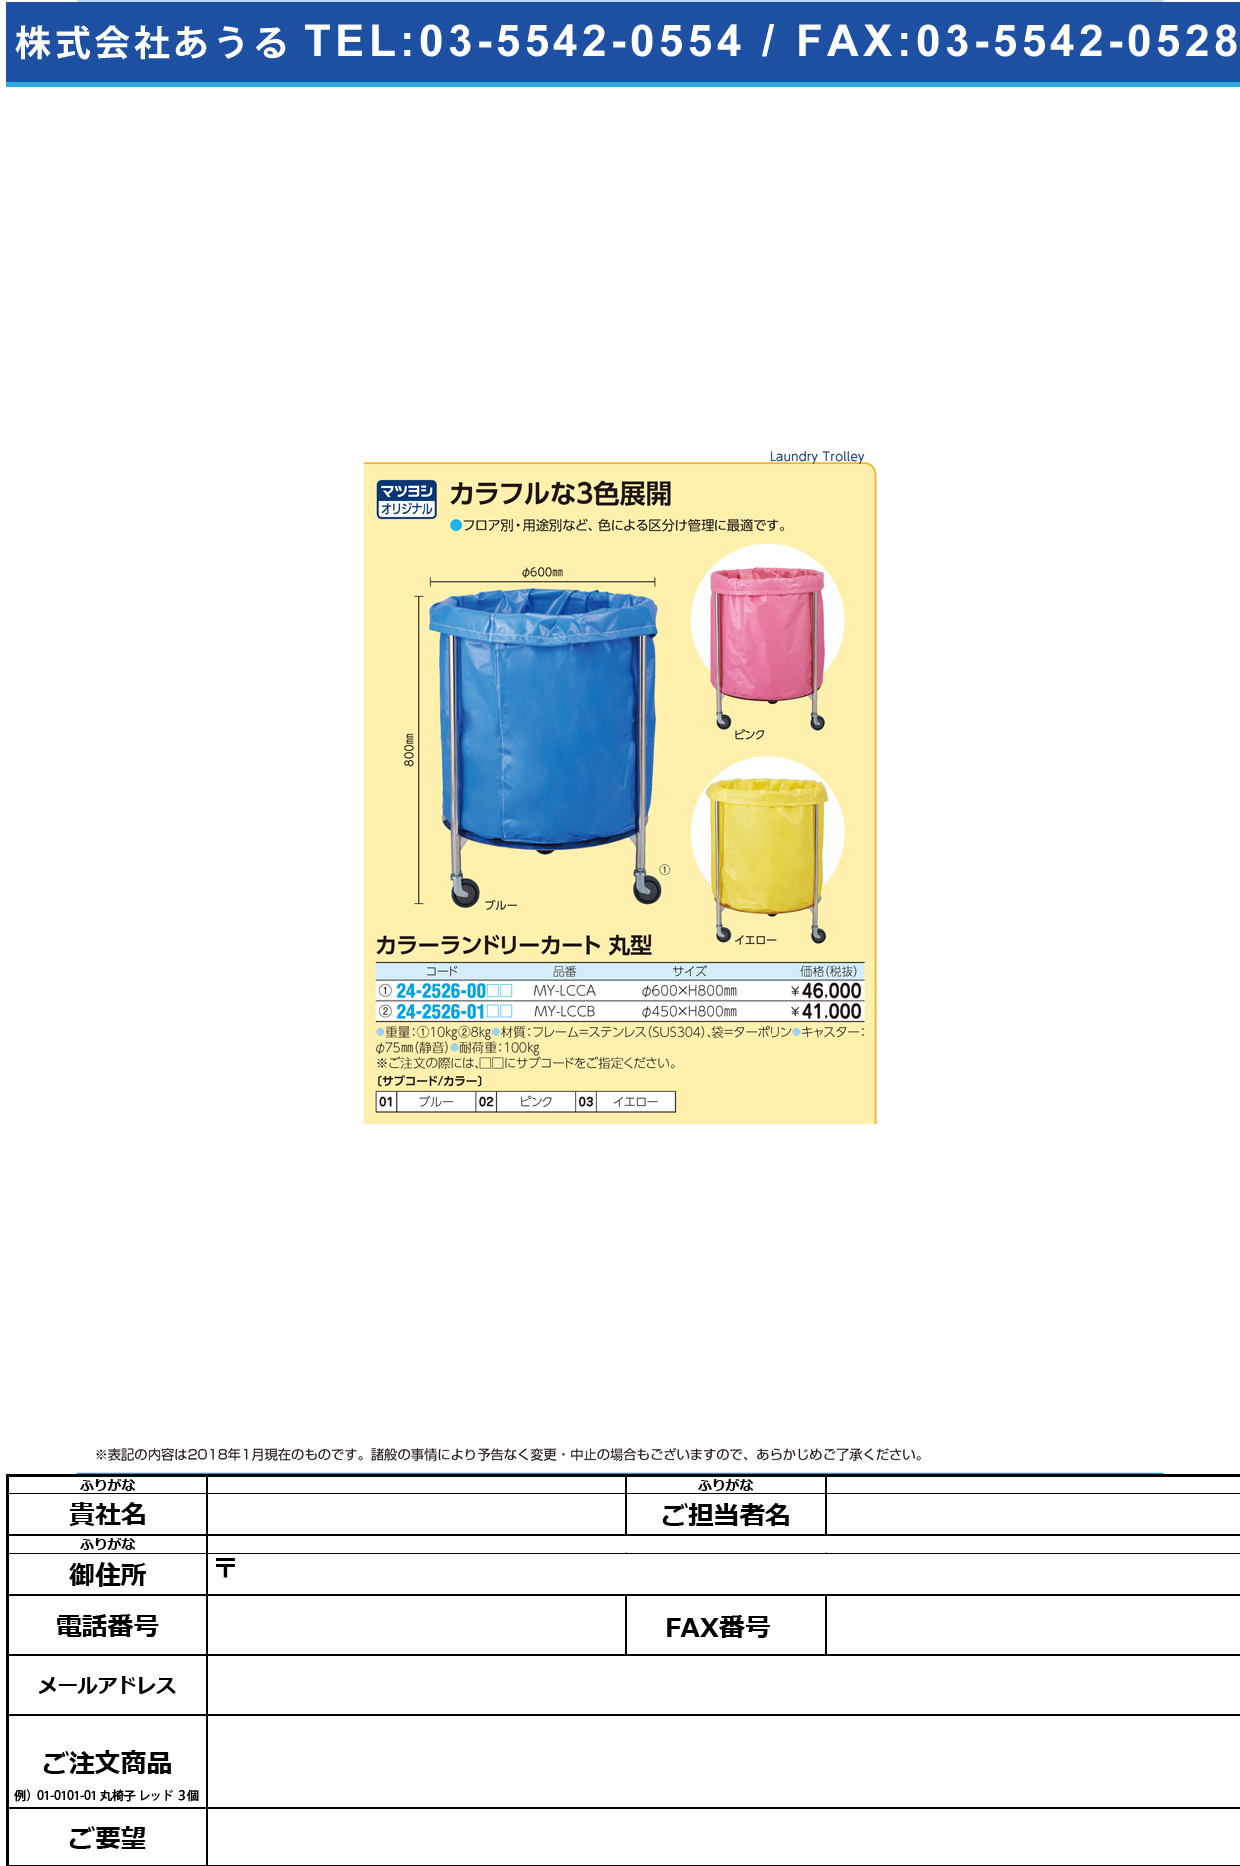 (24-2526-01)カラーランドリーカート（丸型） MY-LCCB(450X800MM) ｶﾗｰﾗﾝﾄﾞﾘｰｶｰﾄﾏﾙｶﾞﾀ ブルー【1台単位】【2019年カタログ商品】